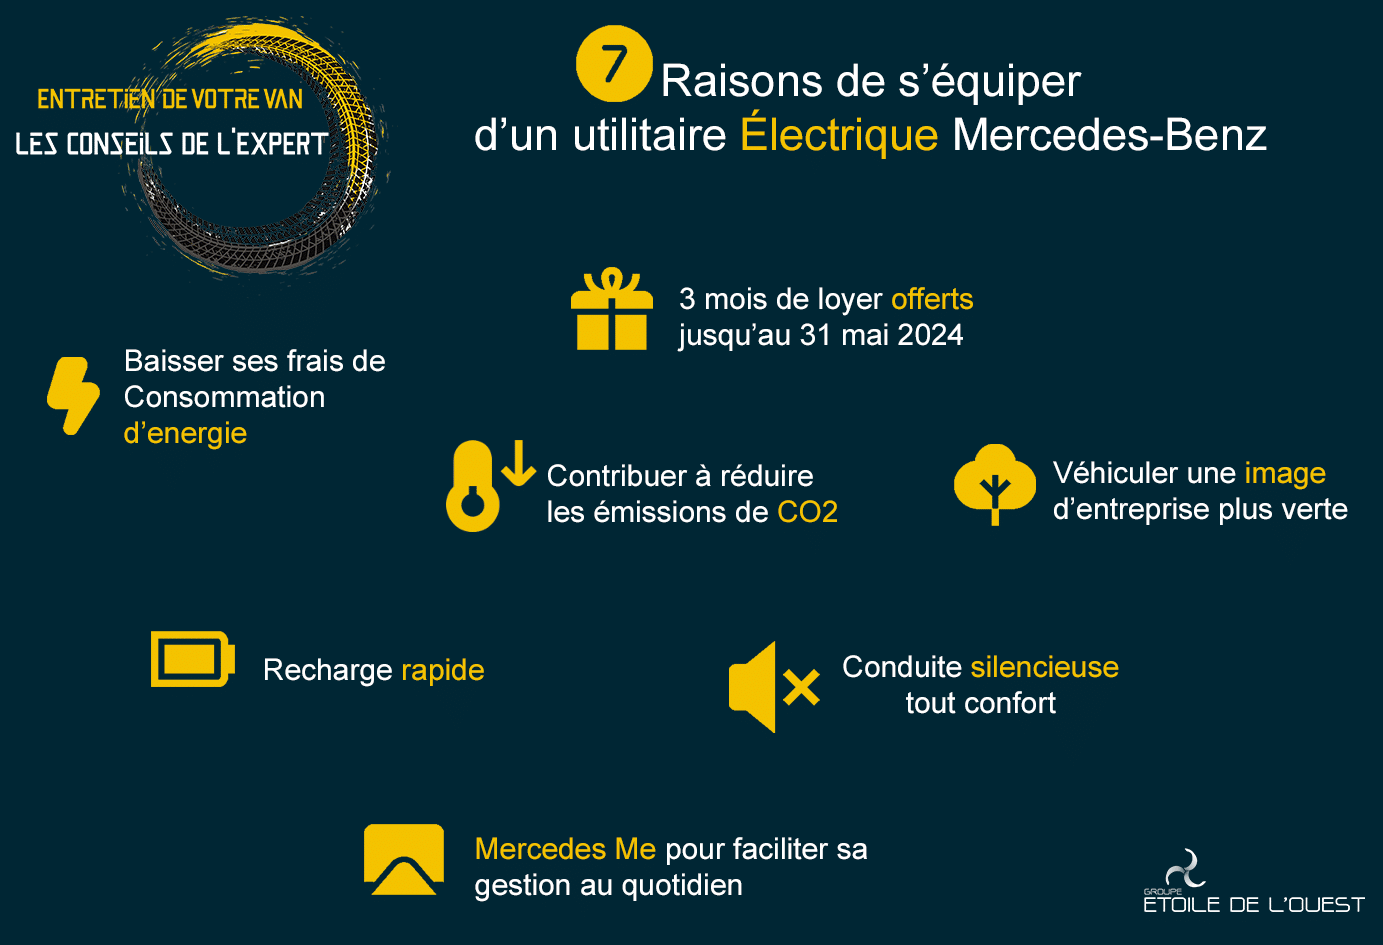 7 raisons de s’équiper d’un utilitaire électrique Mercedes-Benz